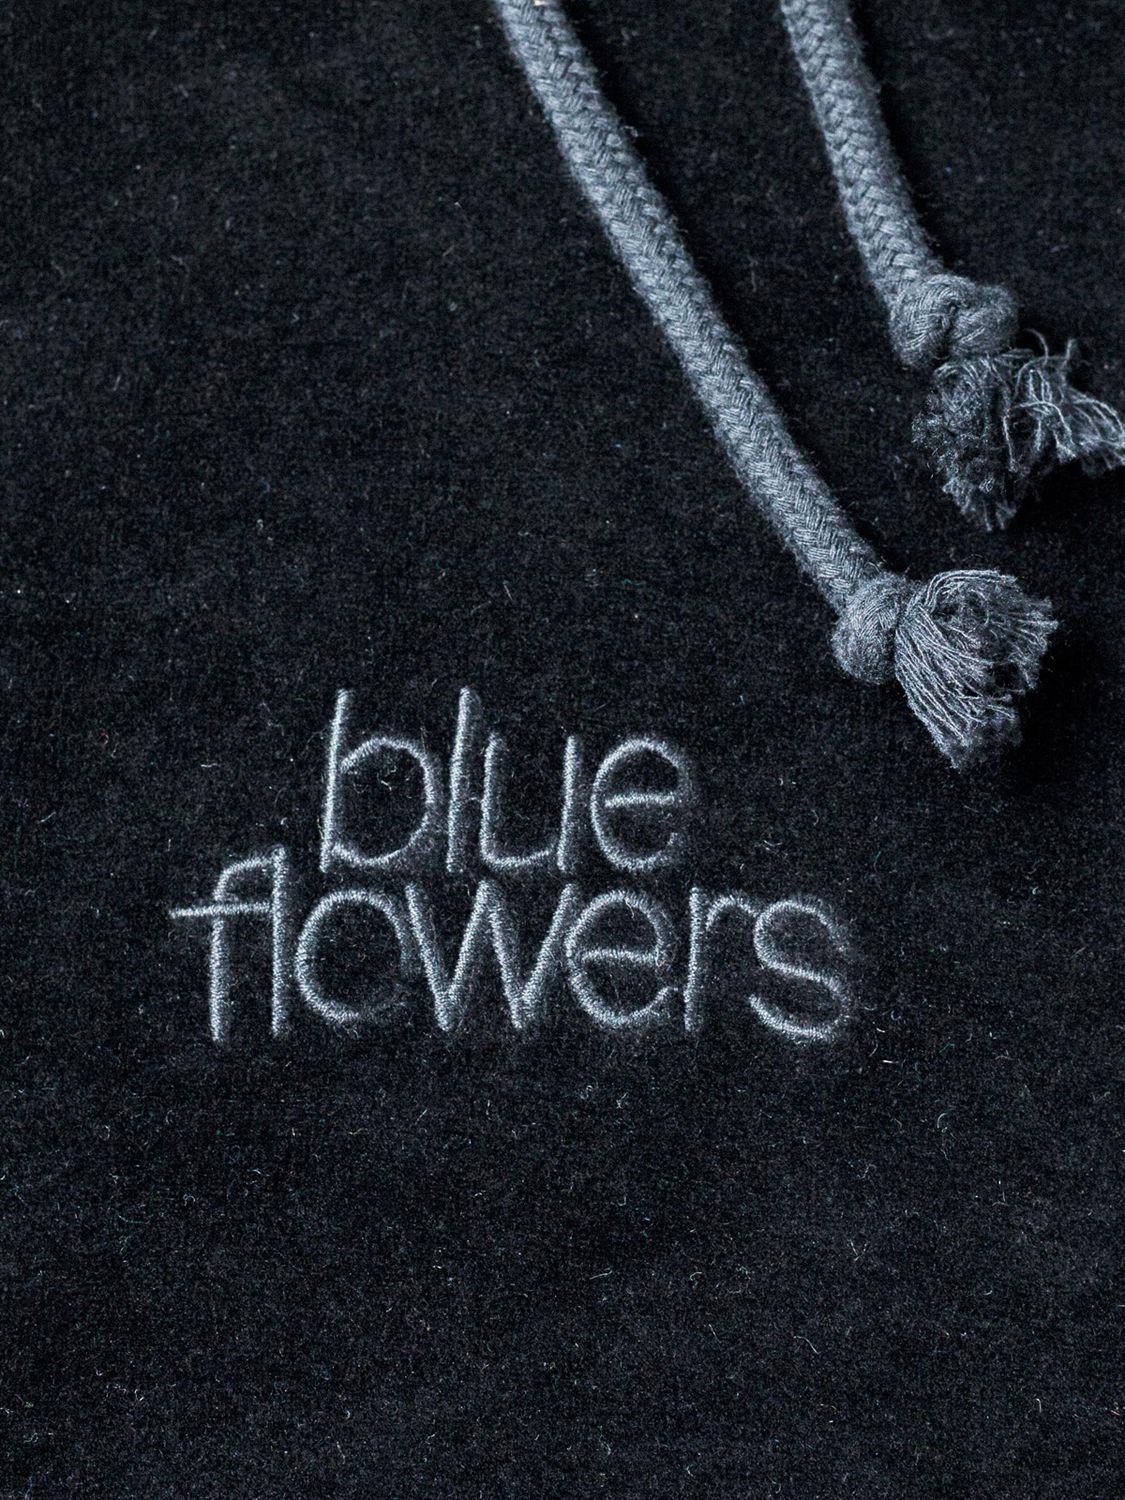 Blue Flowers Galactic Hoodie, Black, S